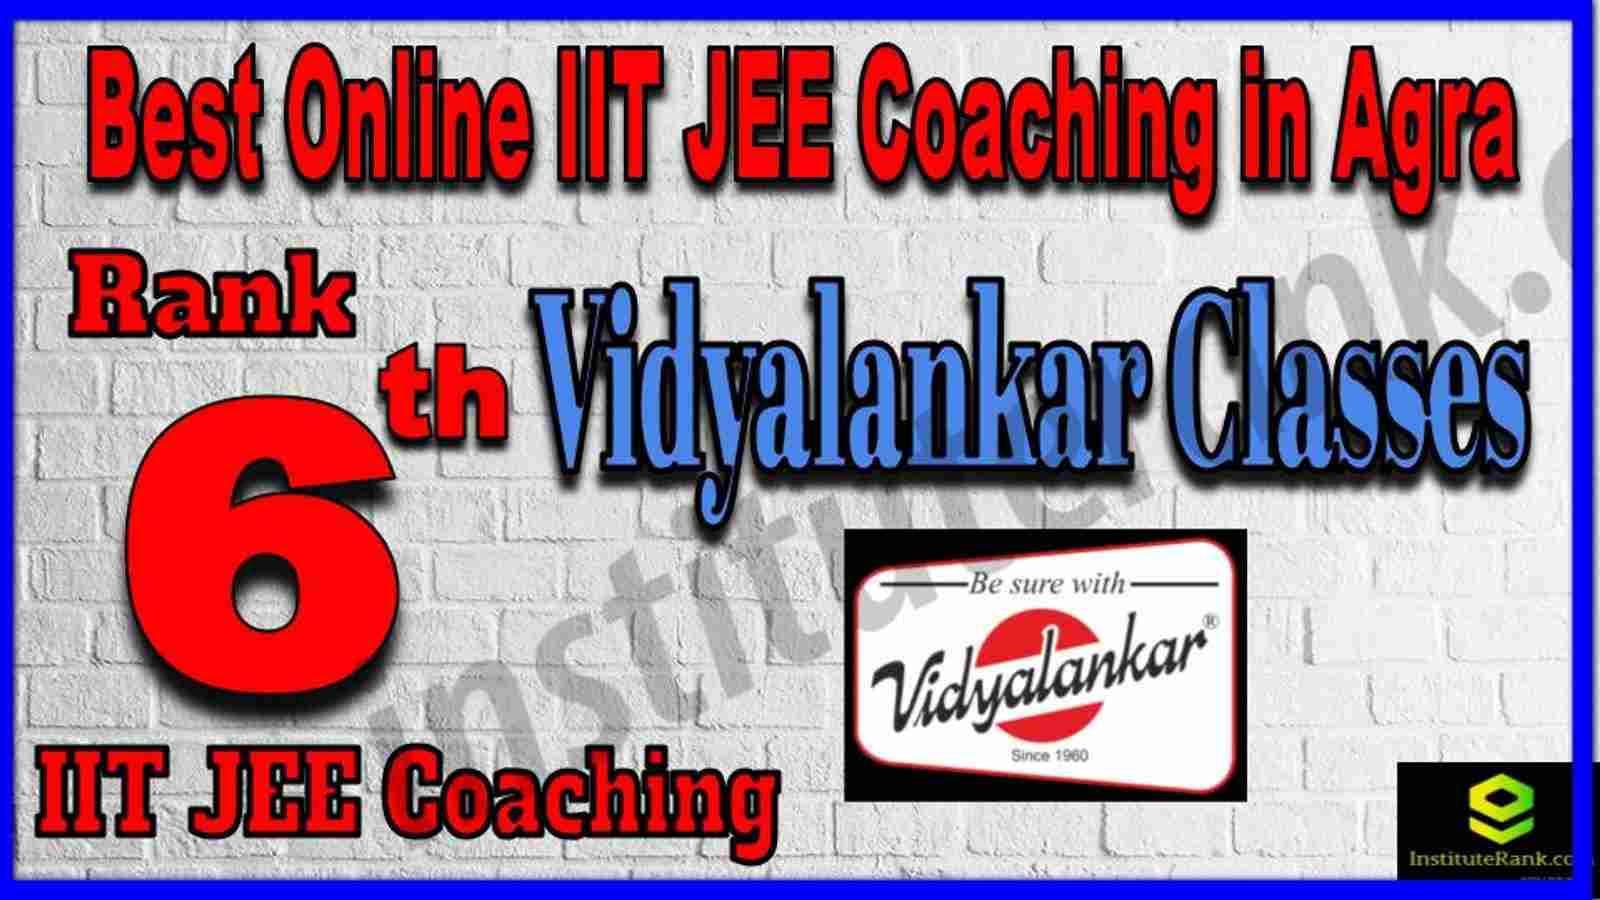 Rank 6th Best Online IIT JEE Coaching in Agra